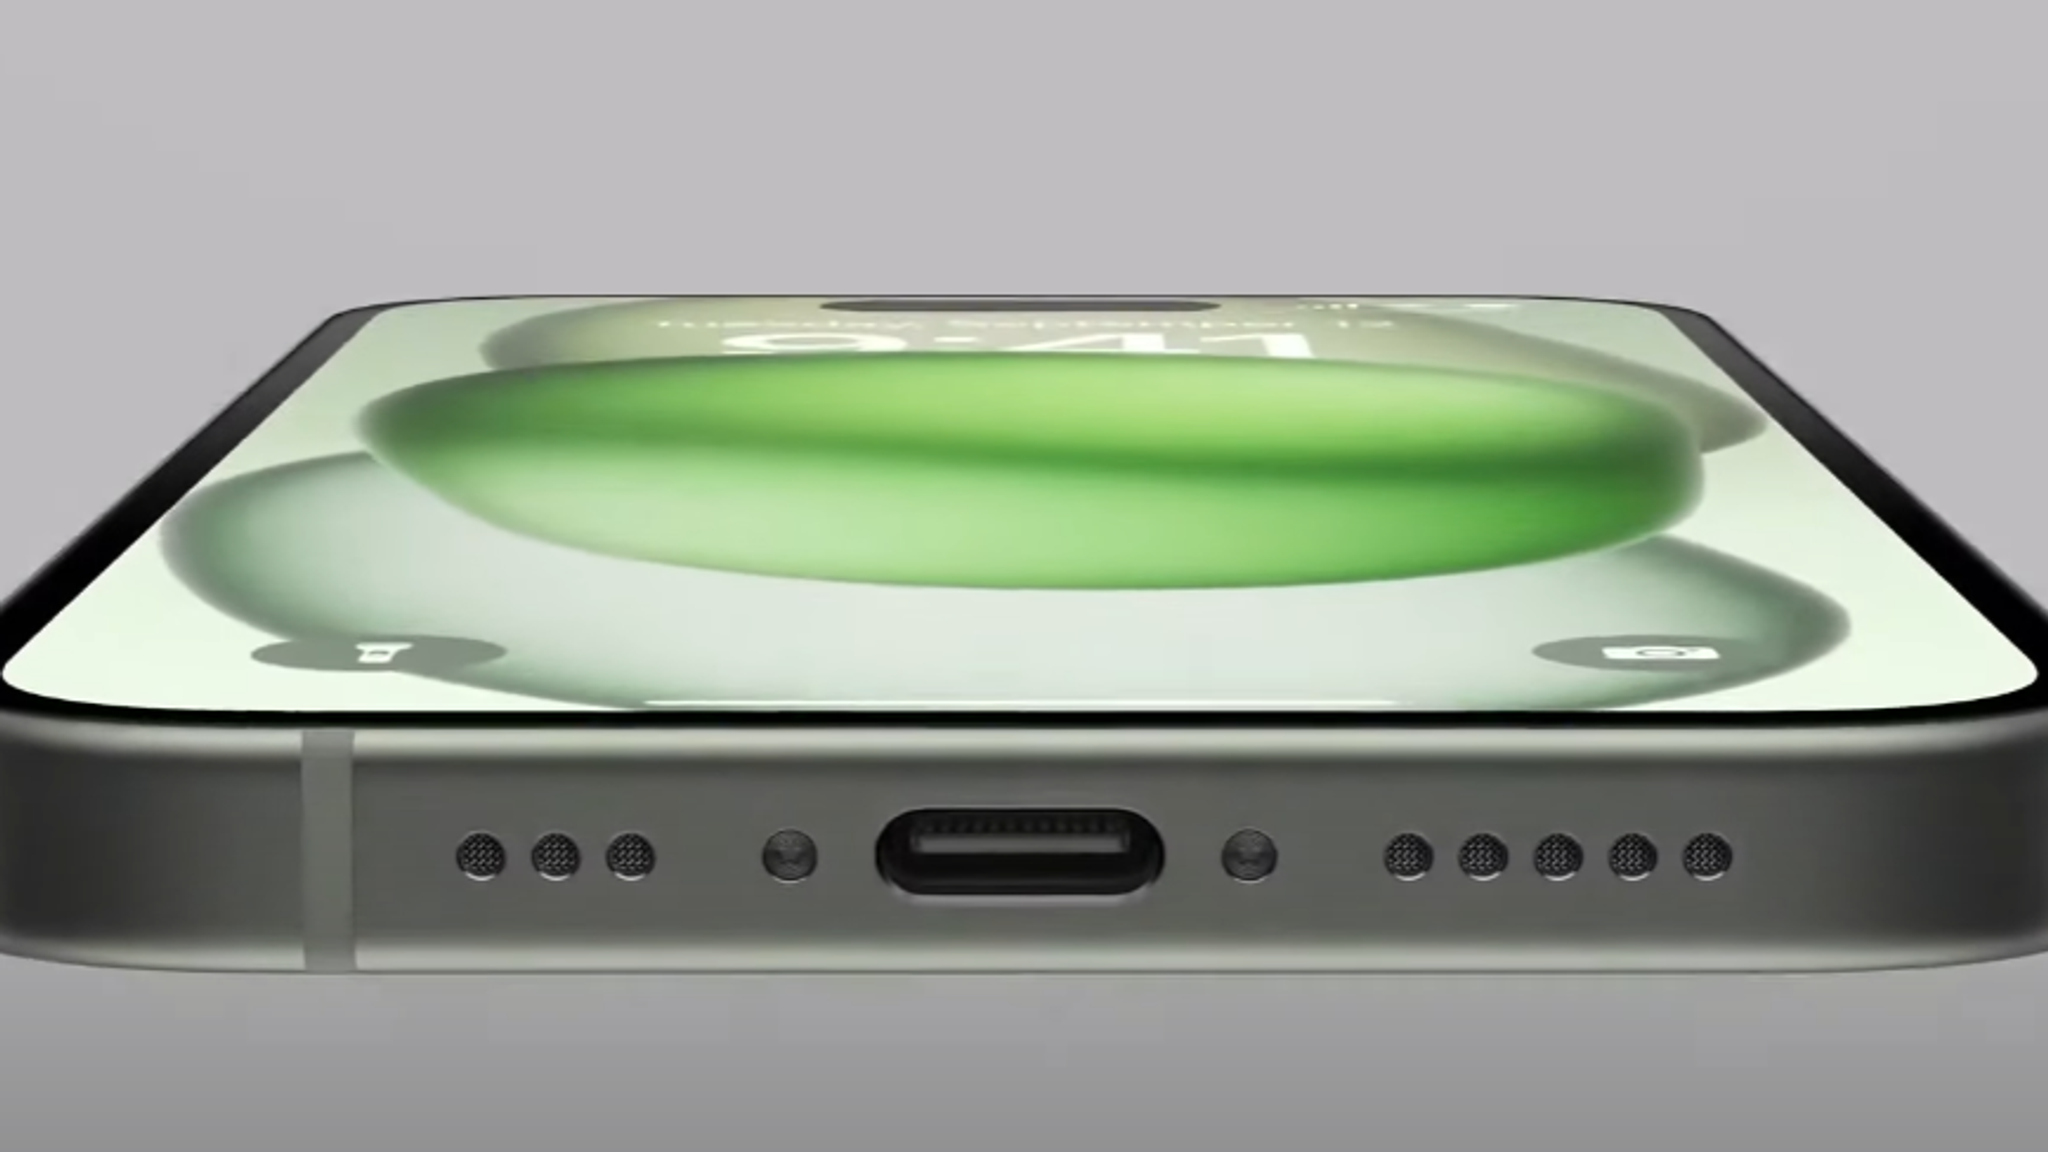 Cable Usb-c a Lightning para iPhone 11 / Mini, 11 Pro, Pro Max de